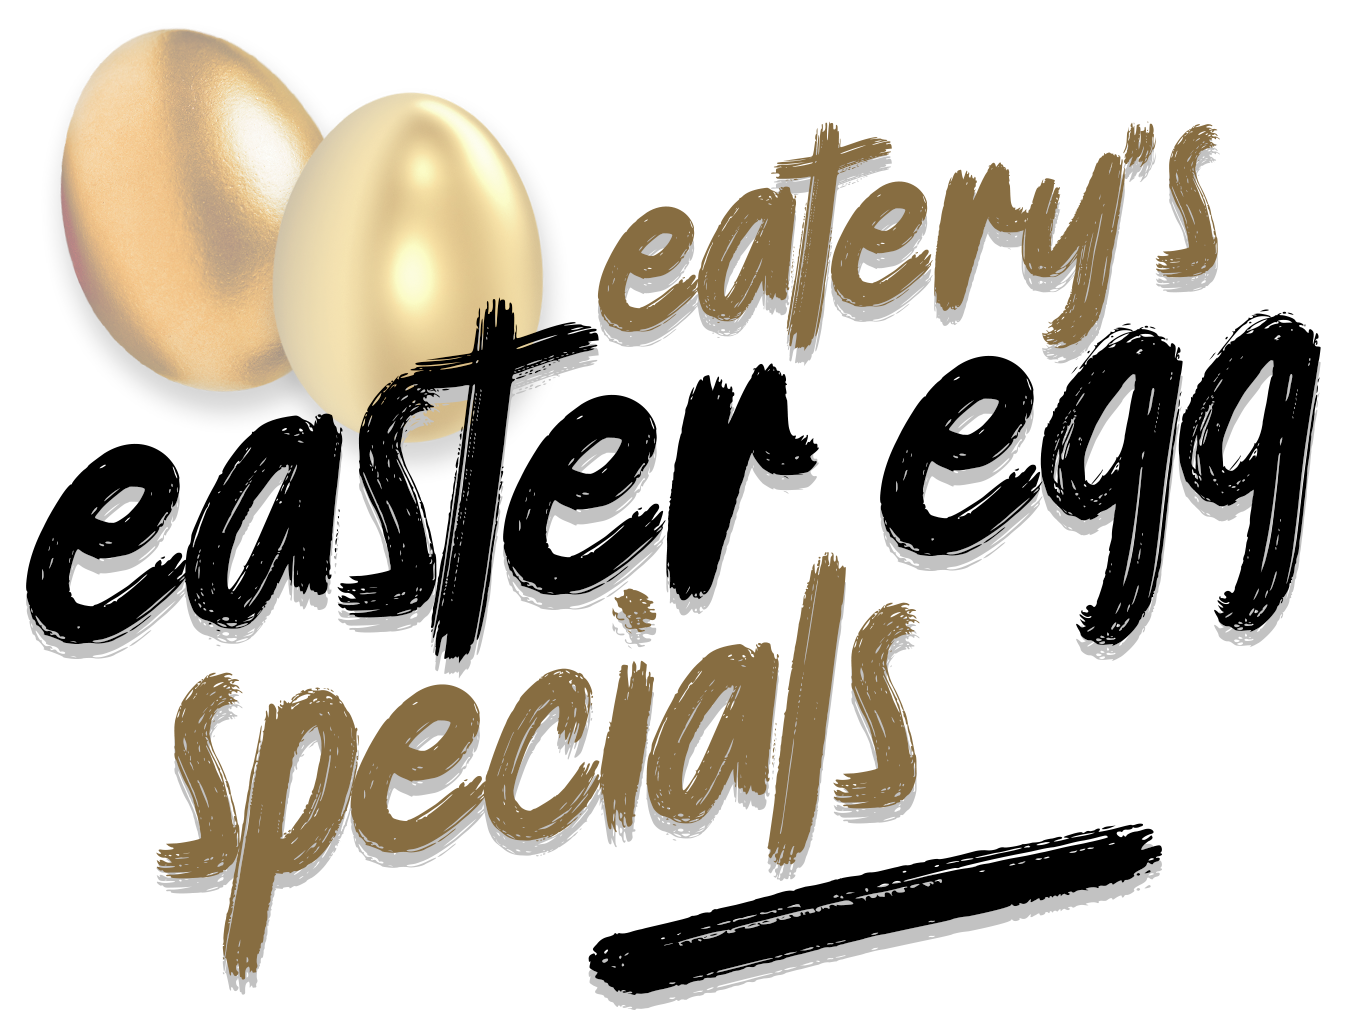 Eatery's Easter Eggs